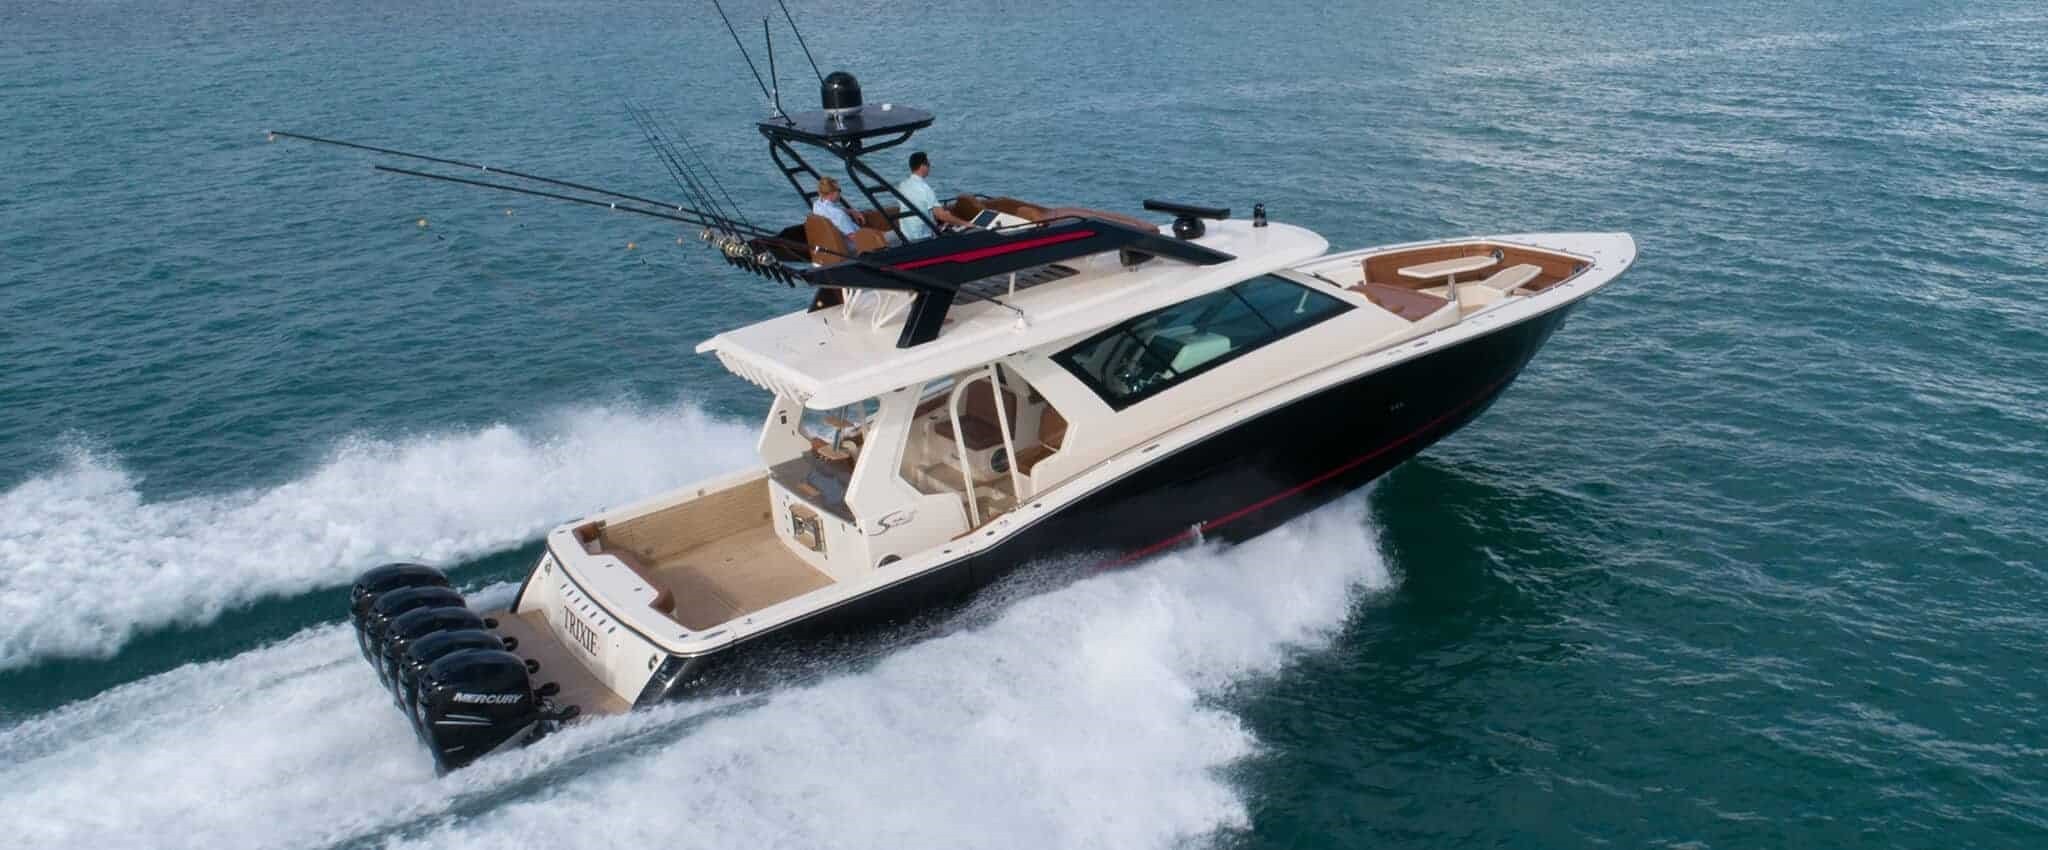 Scout Boats – AIREX® T92, AIREX® C70, AIREX® PXc, Coremat, Soric